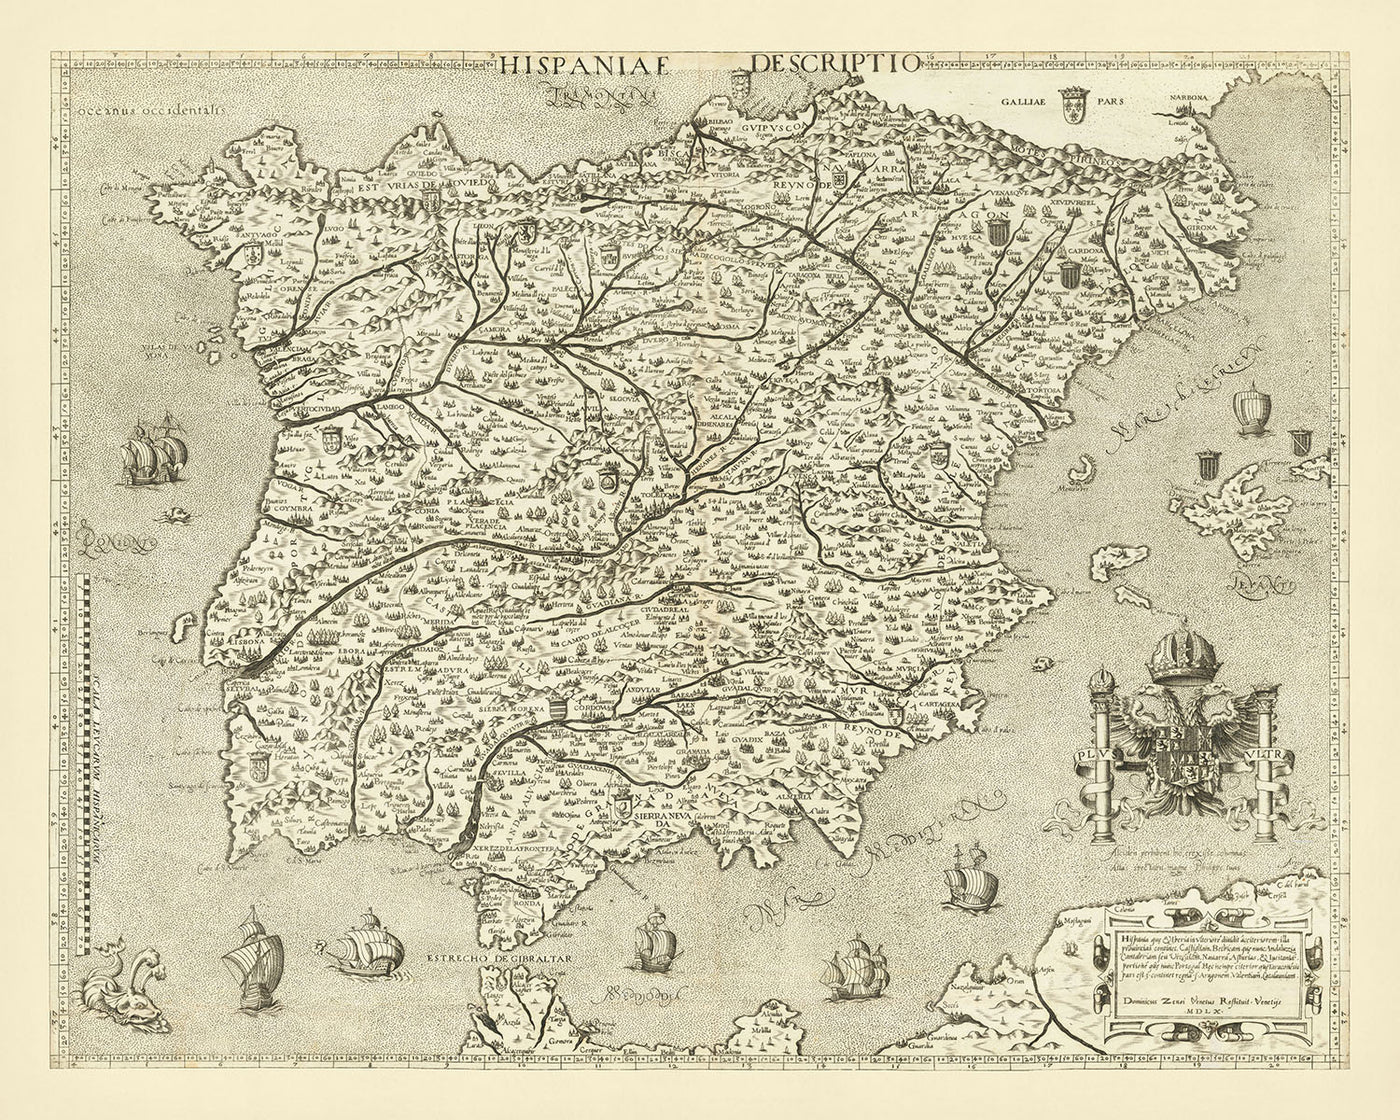 Ancienne carte picturale de l'Espagne et du Portugal par Zenoi, 1560 : Piliers d'Hercule, Séville, Lisbonne, Pyrénées, Monstres marins